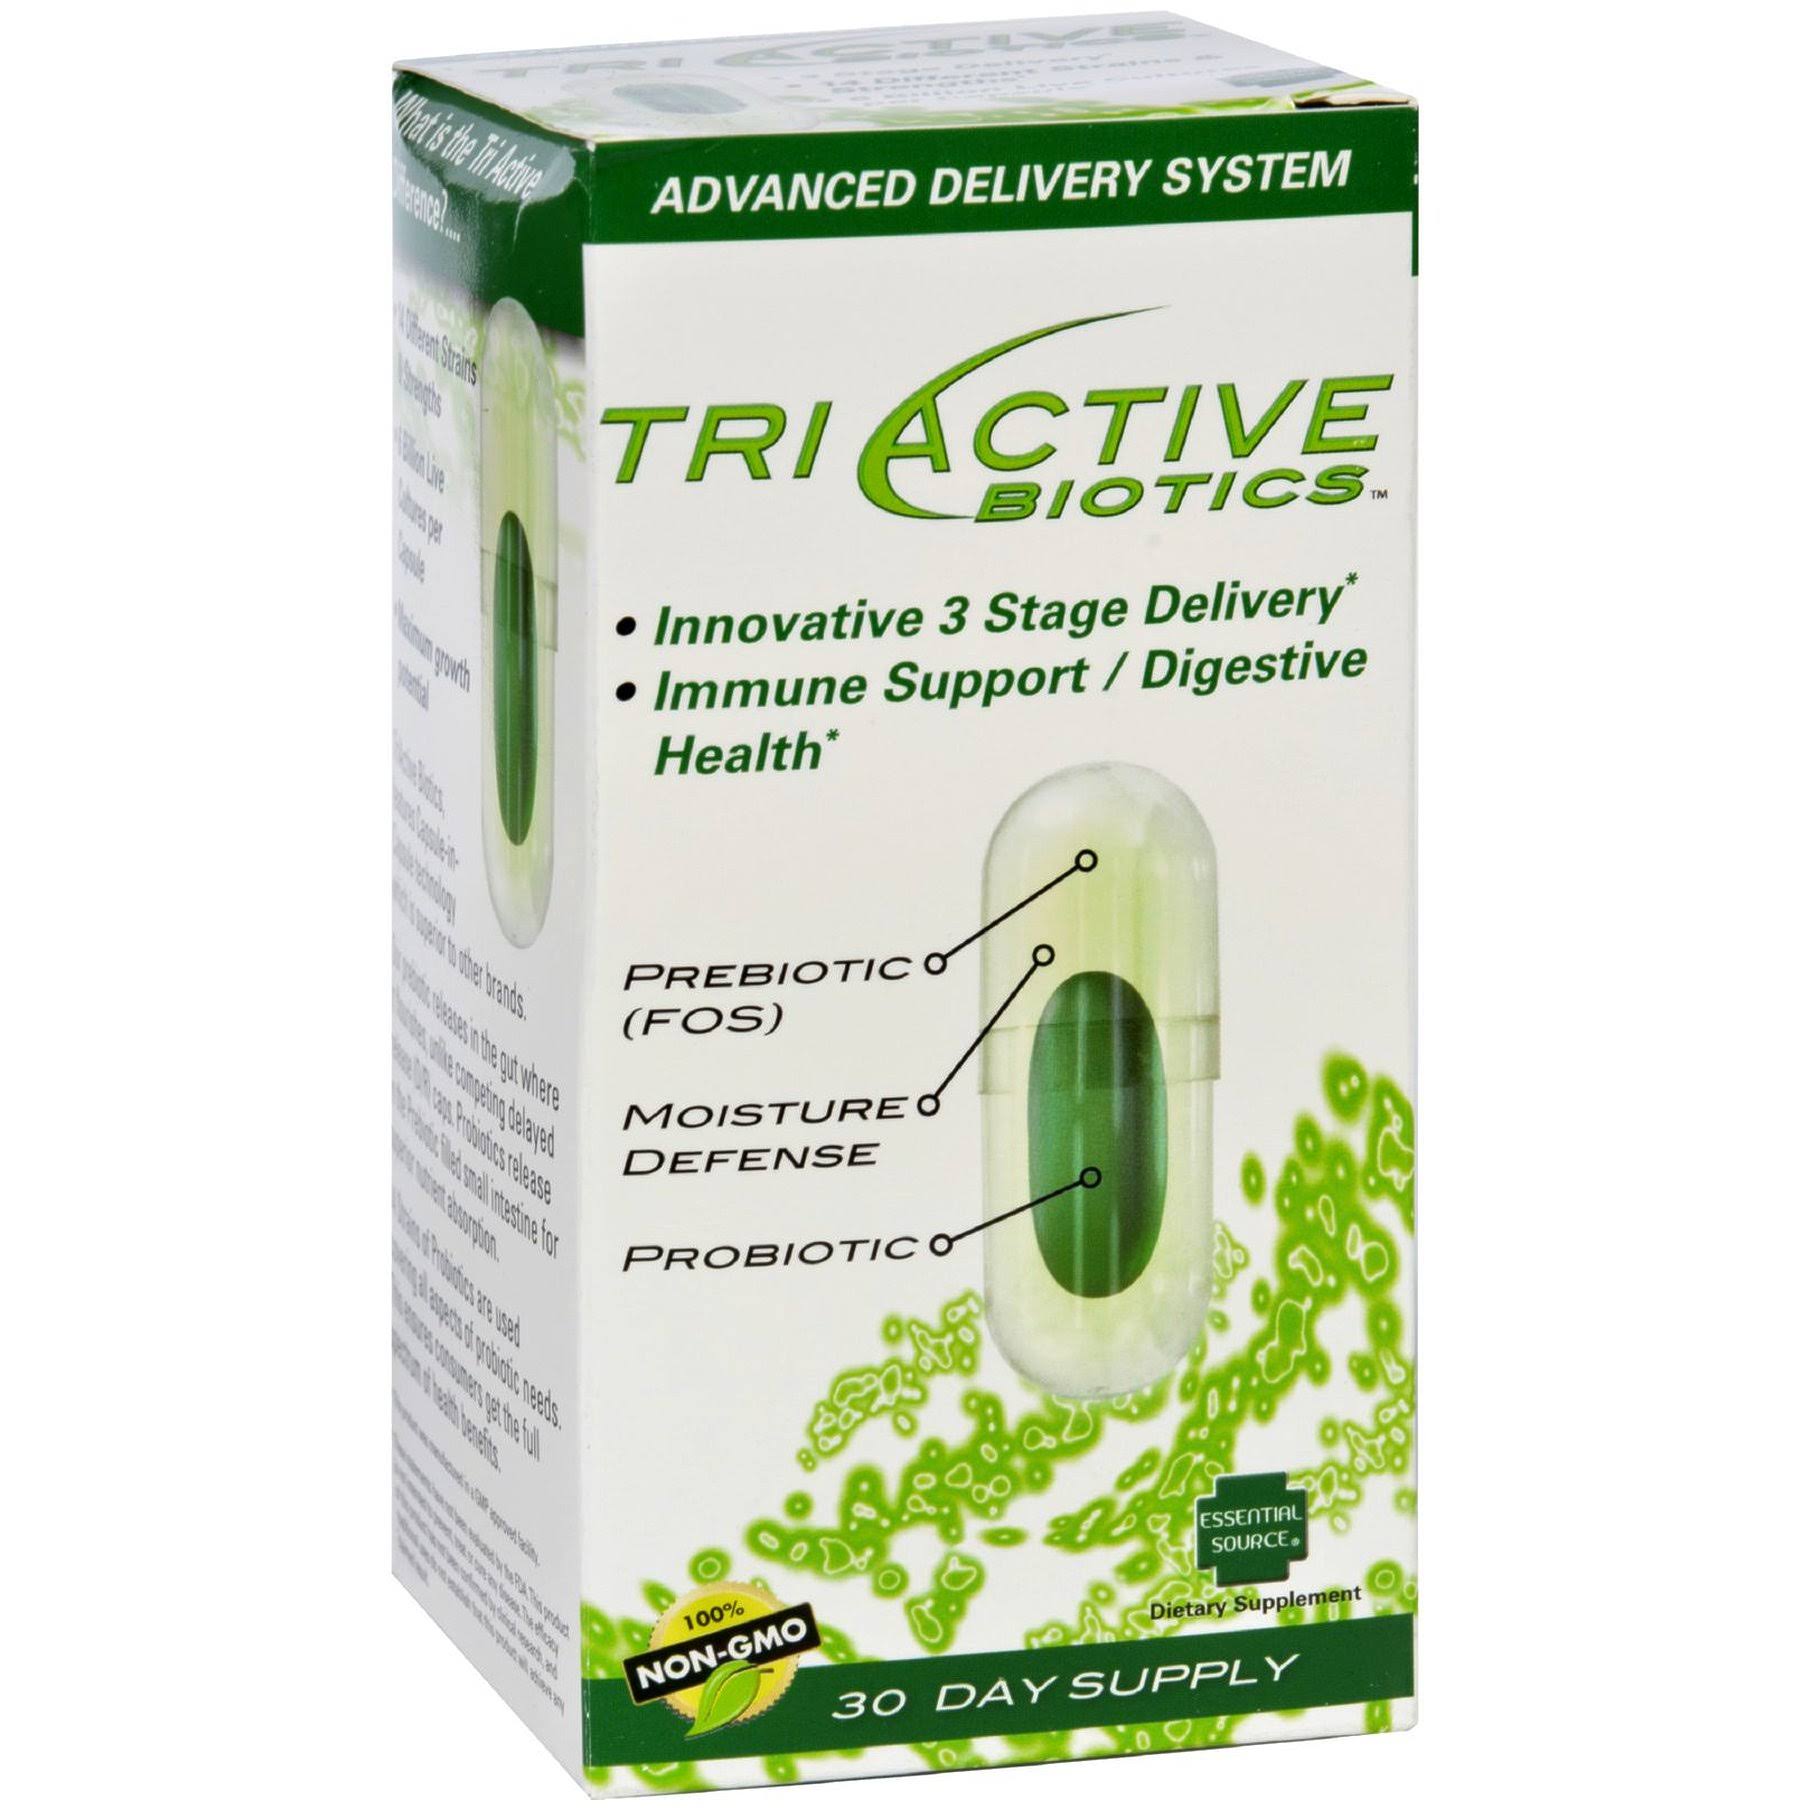 Essential Source Tri Active Biotics Supplement - 30 Capsules